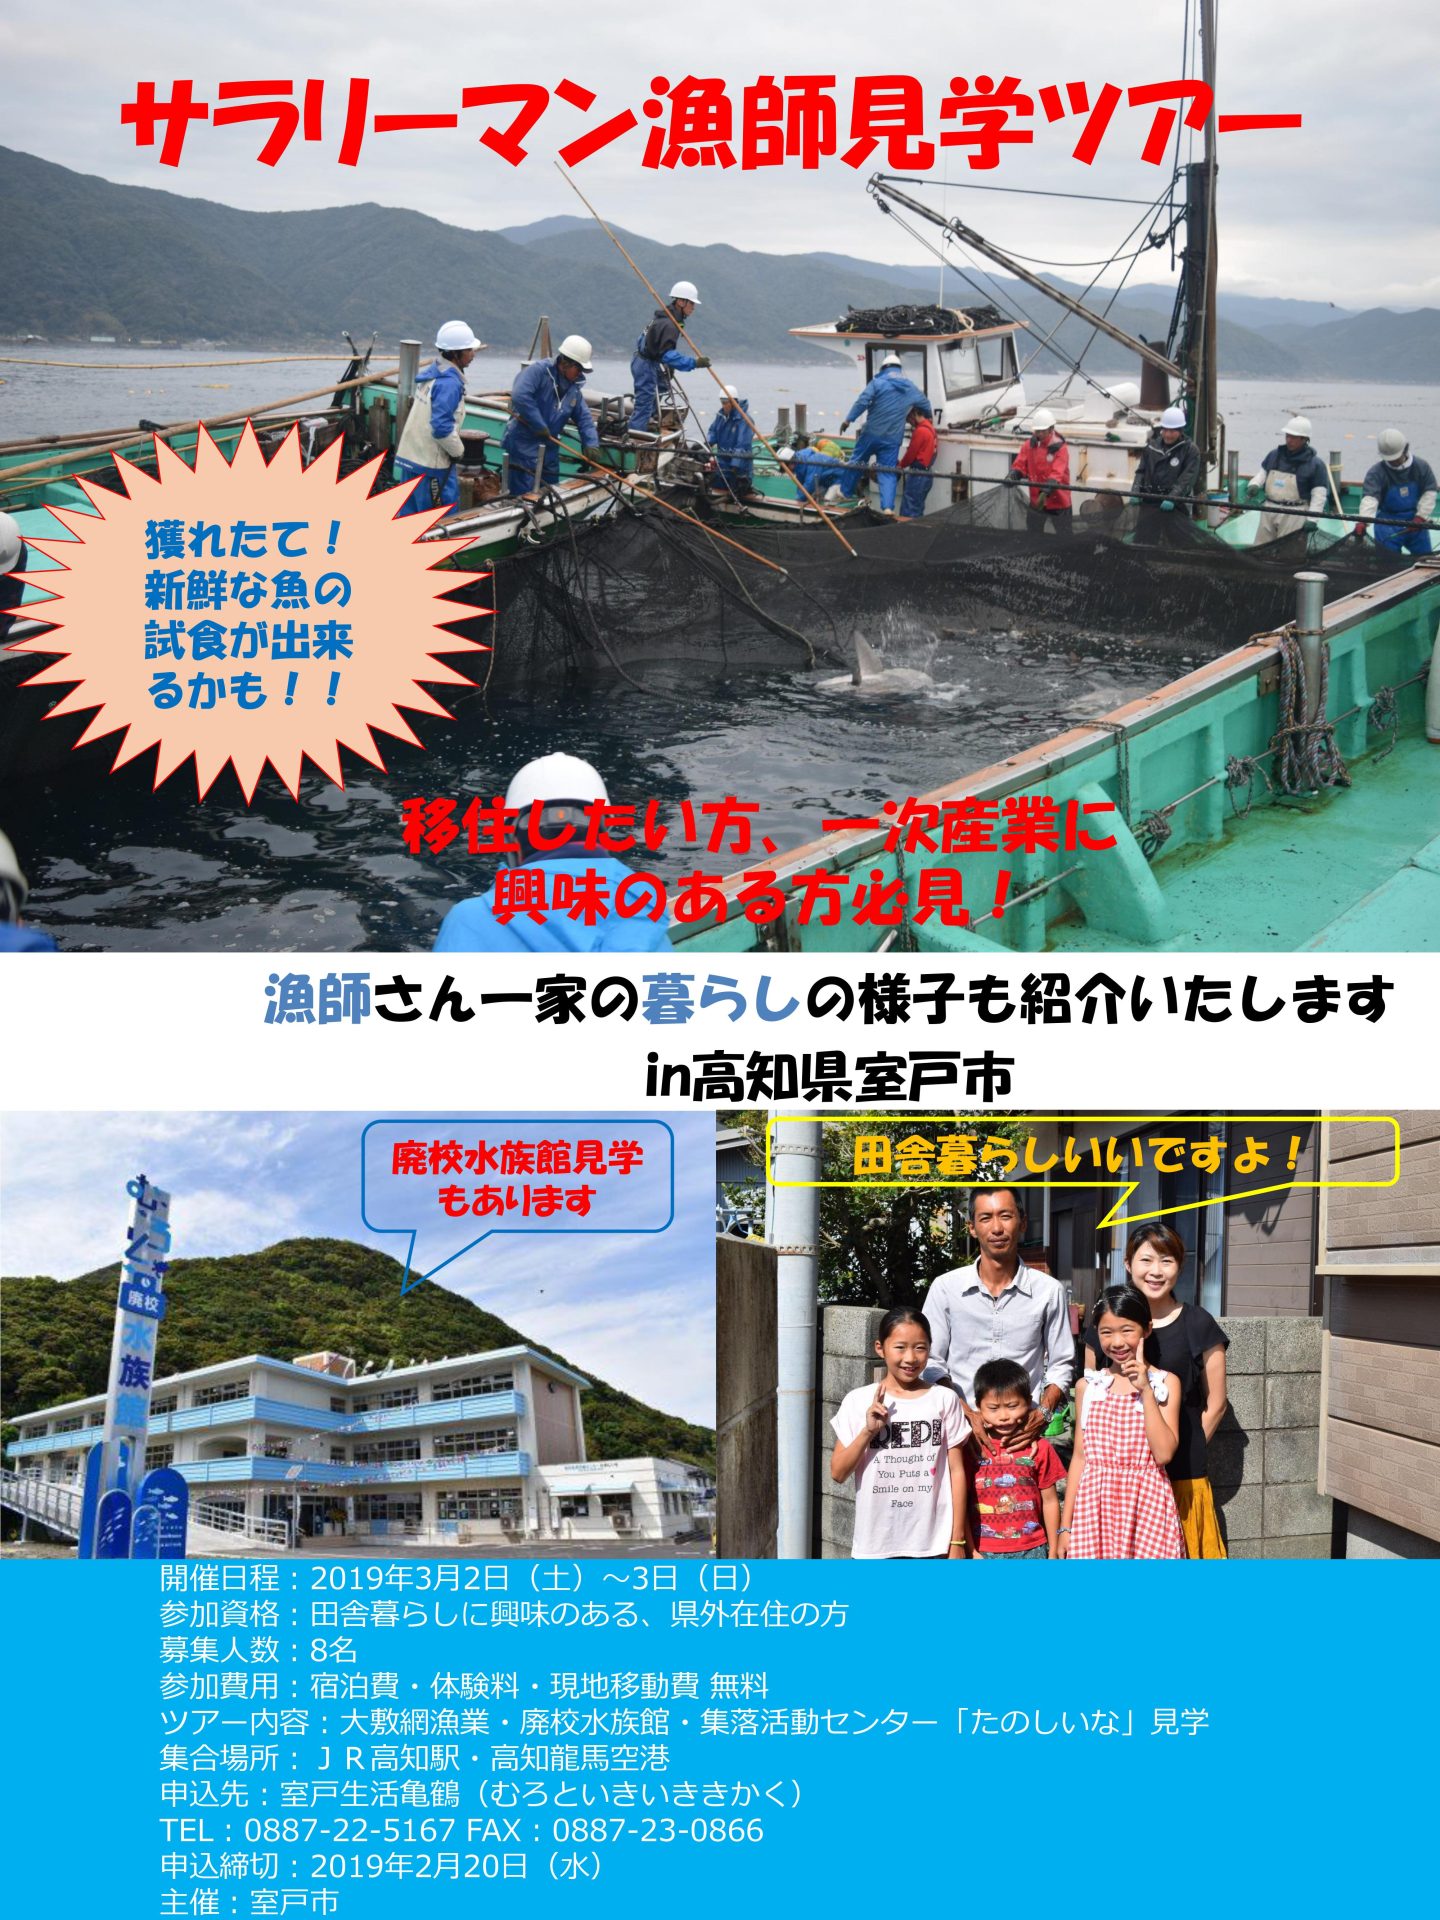 高知県『サラリーマン漁師見学ツアー』 | 移住関連イベント情報